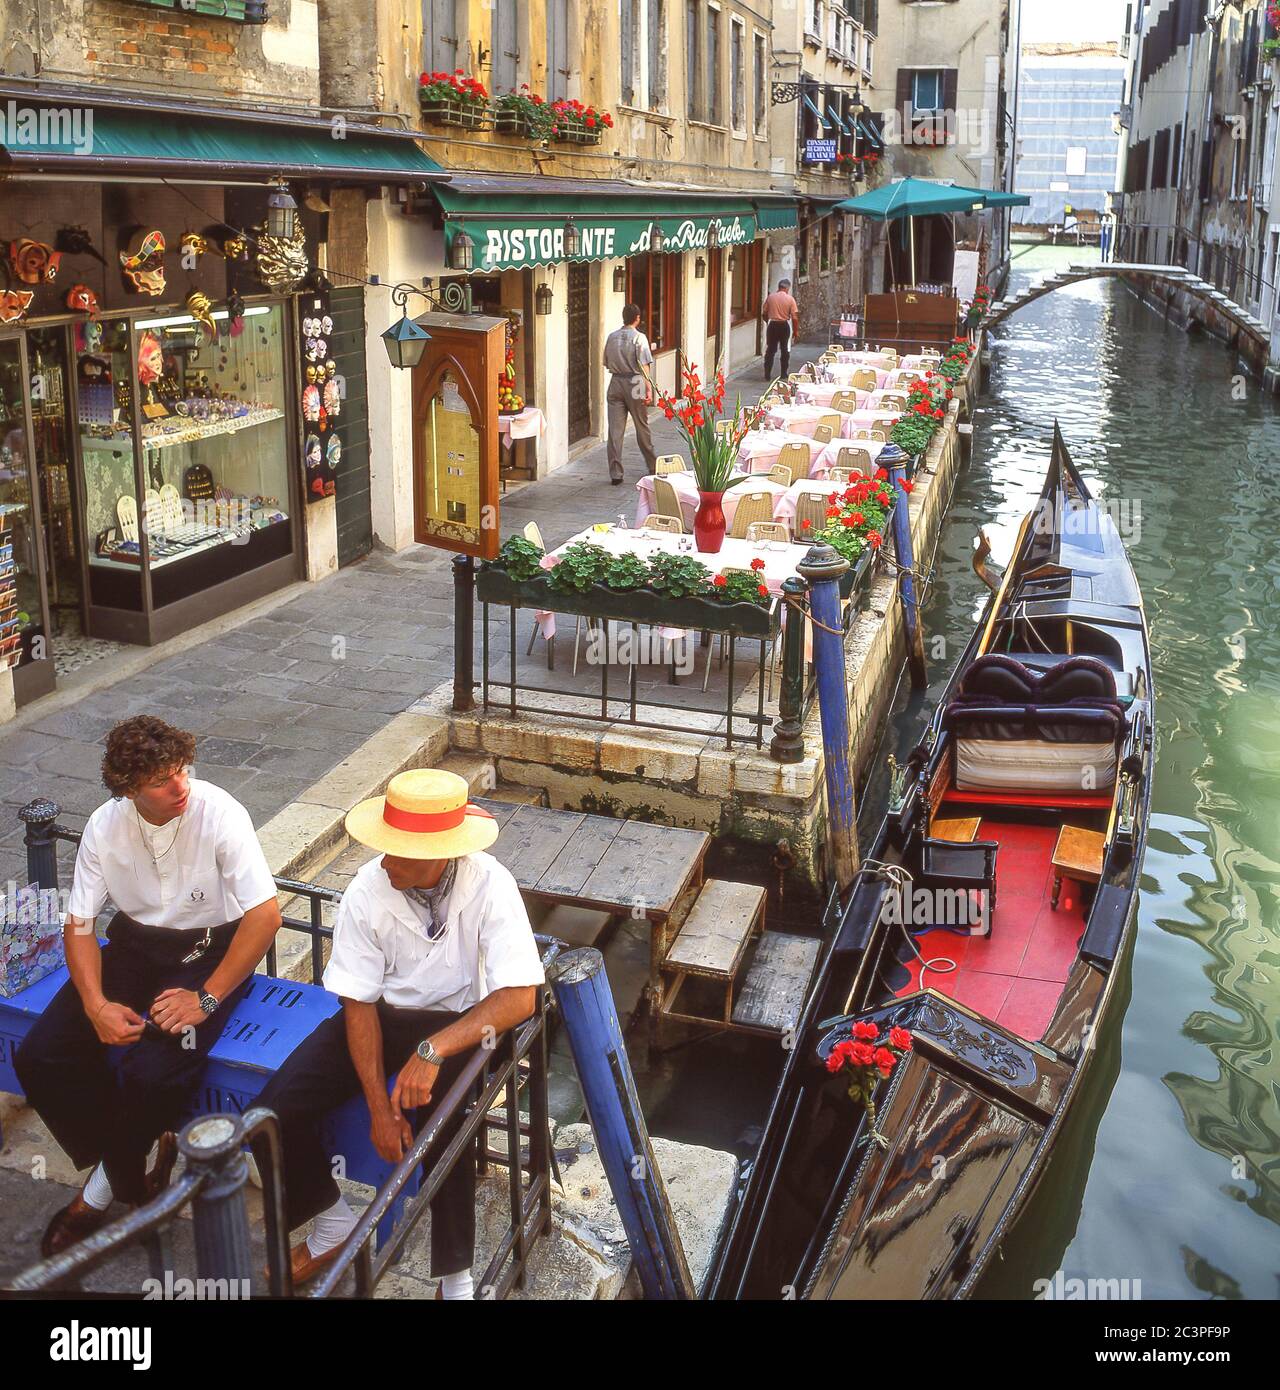 Télécabine et gondoles sur le canal de l'arrière-rue, Venise (Venise), région de Vénétie, Italie Banque D'Images